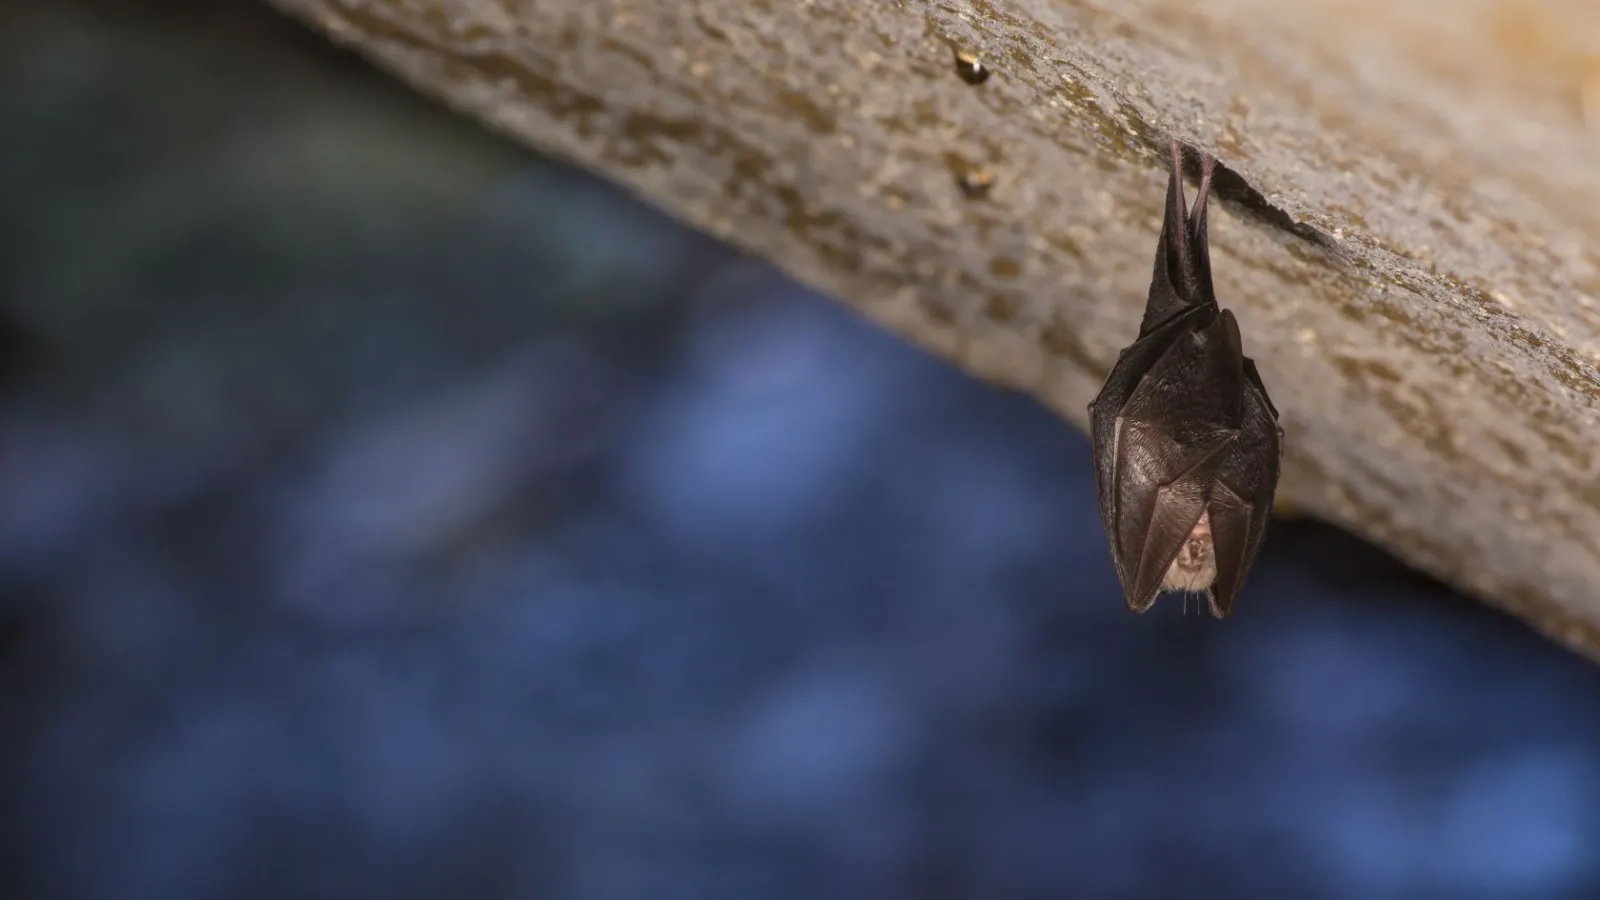 a close up of a bat